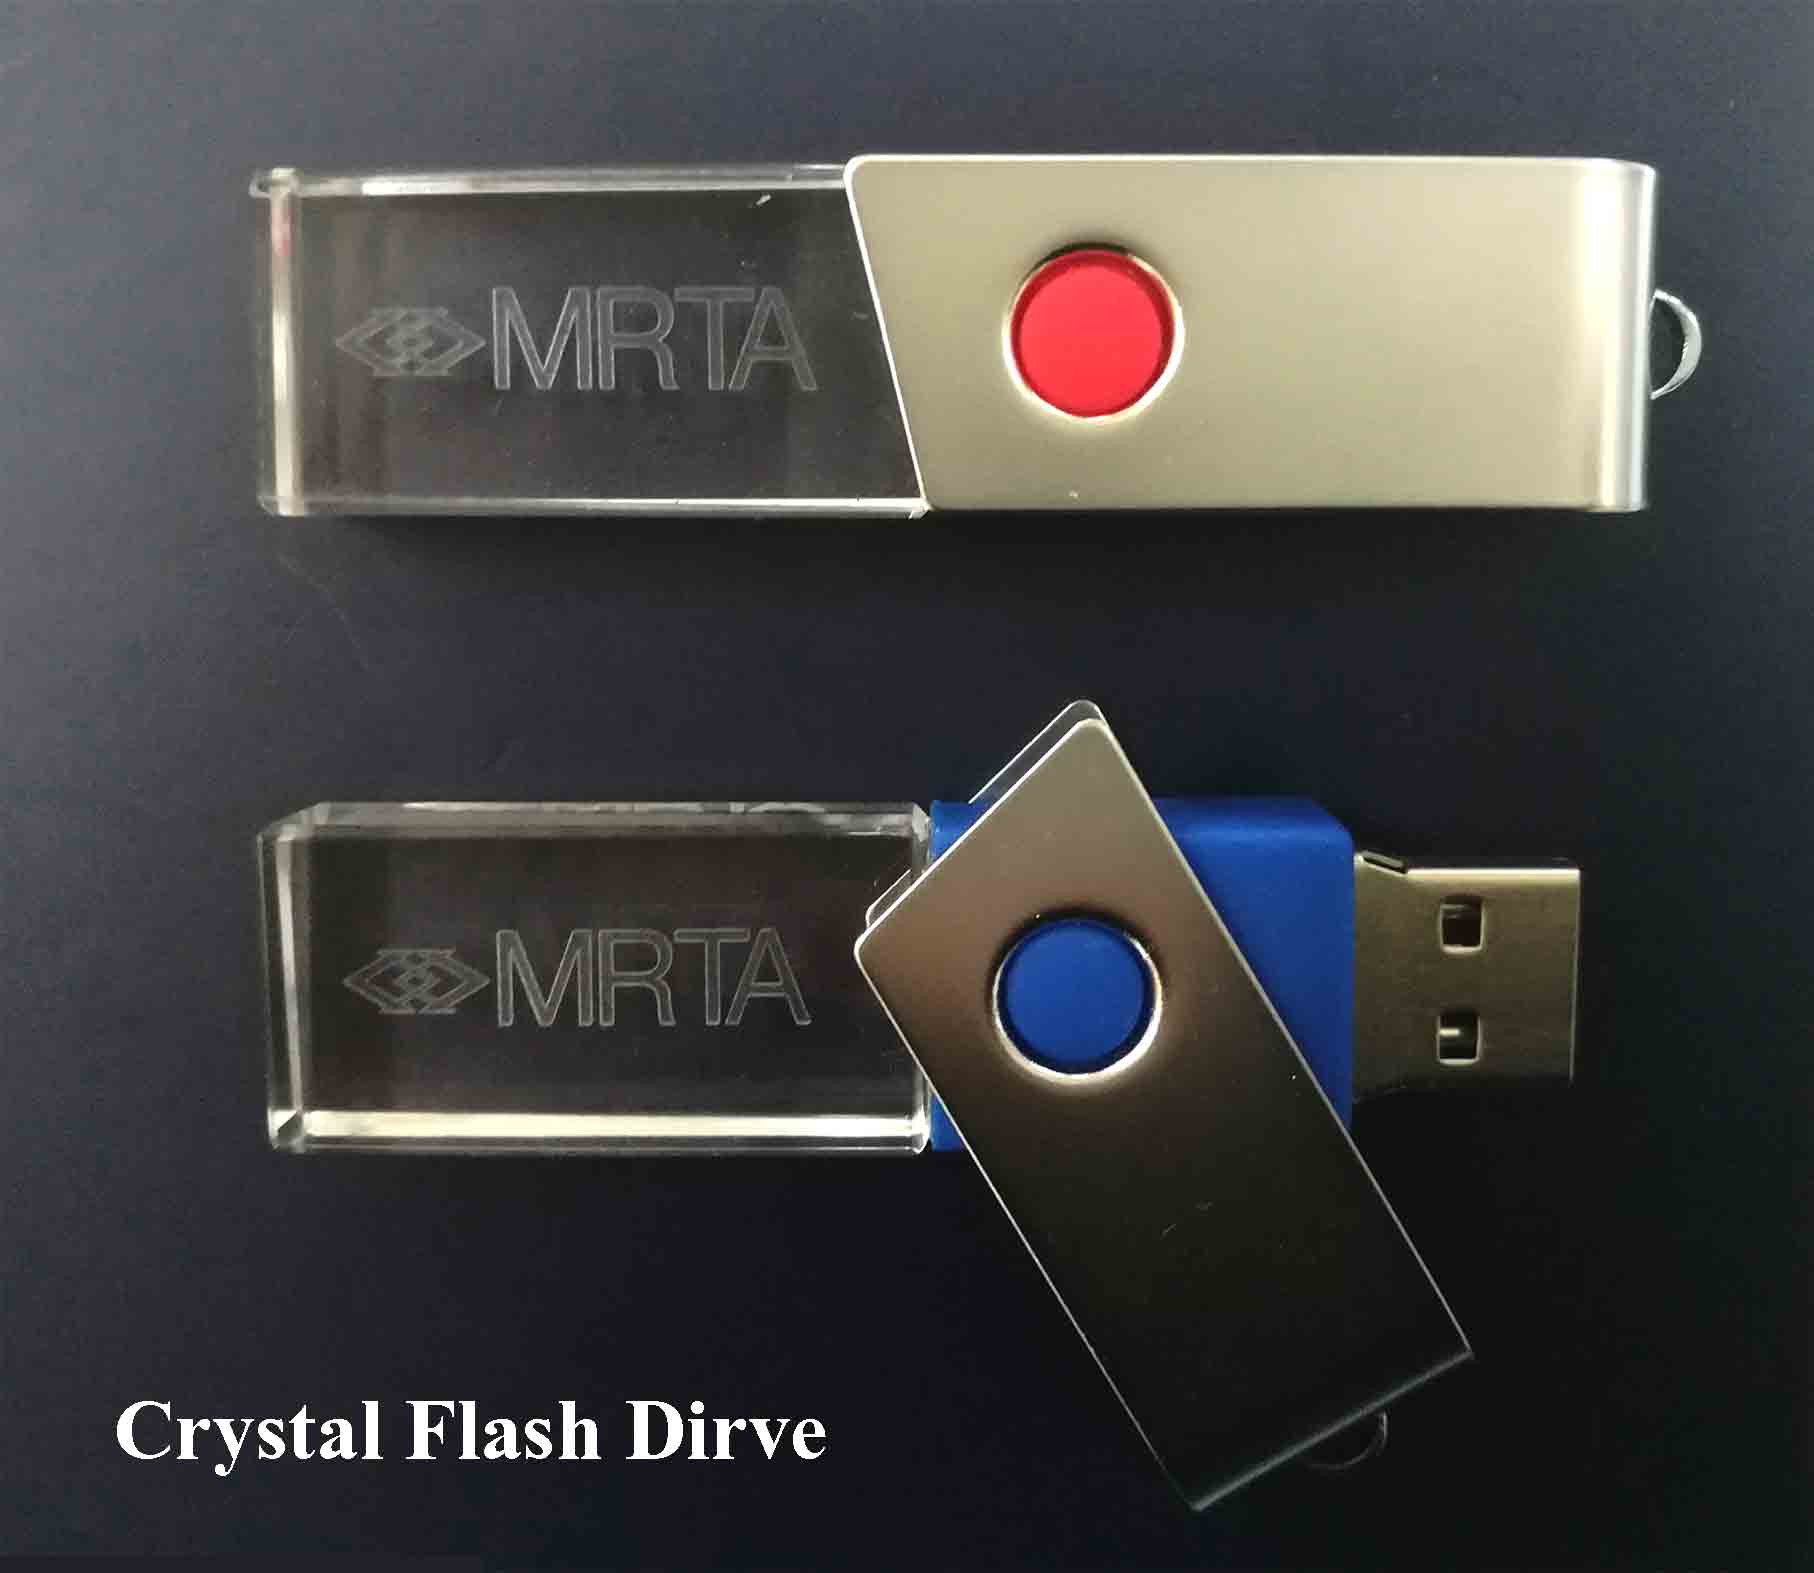 แฟลตไดร์ท #BRTA Crystal Flash Drive